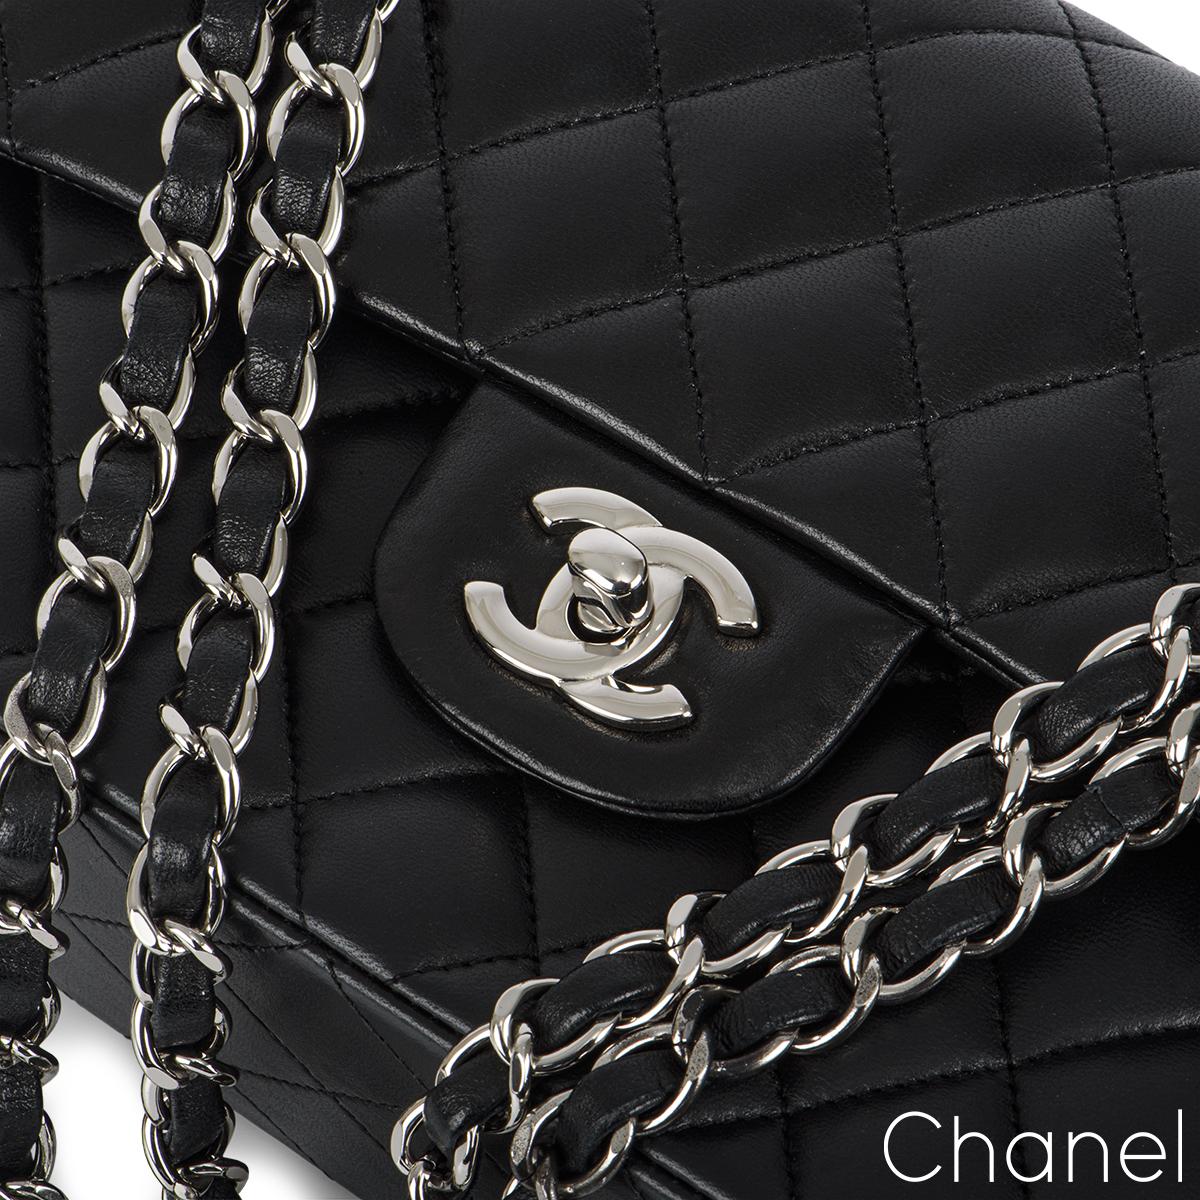 Women's Chanel Black Lambskin Small Double Flap Bag